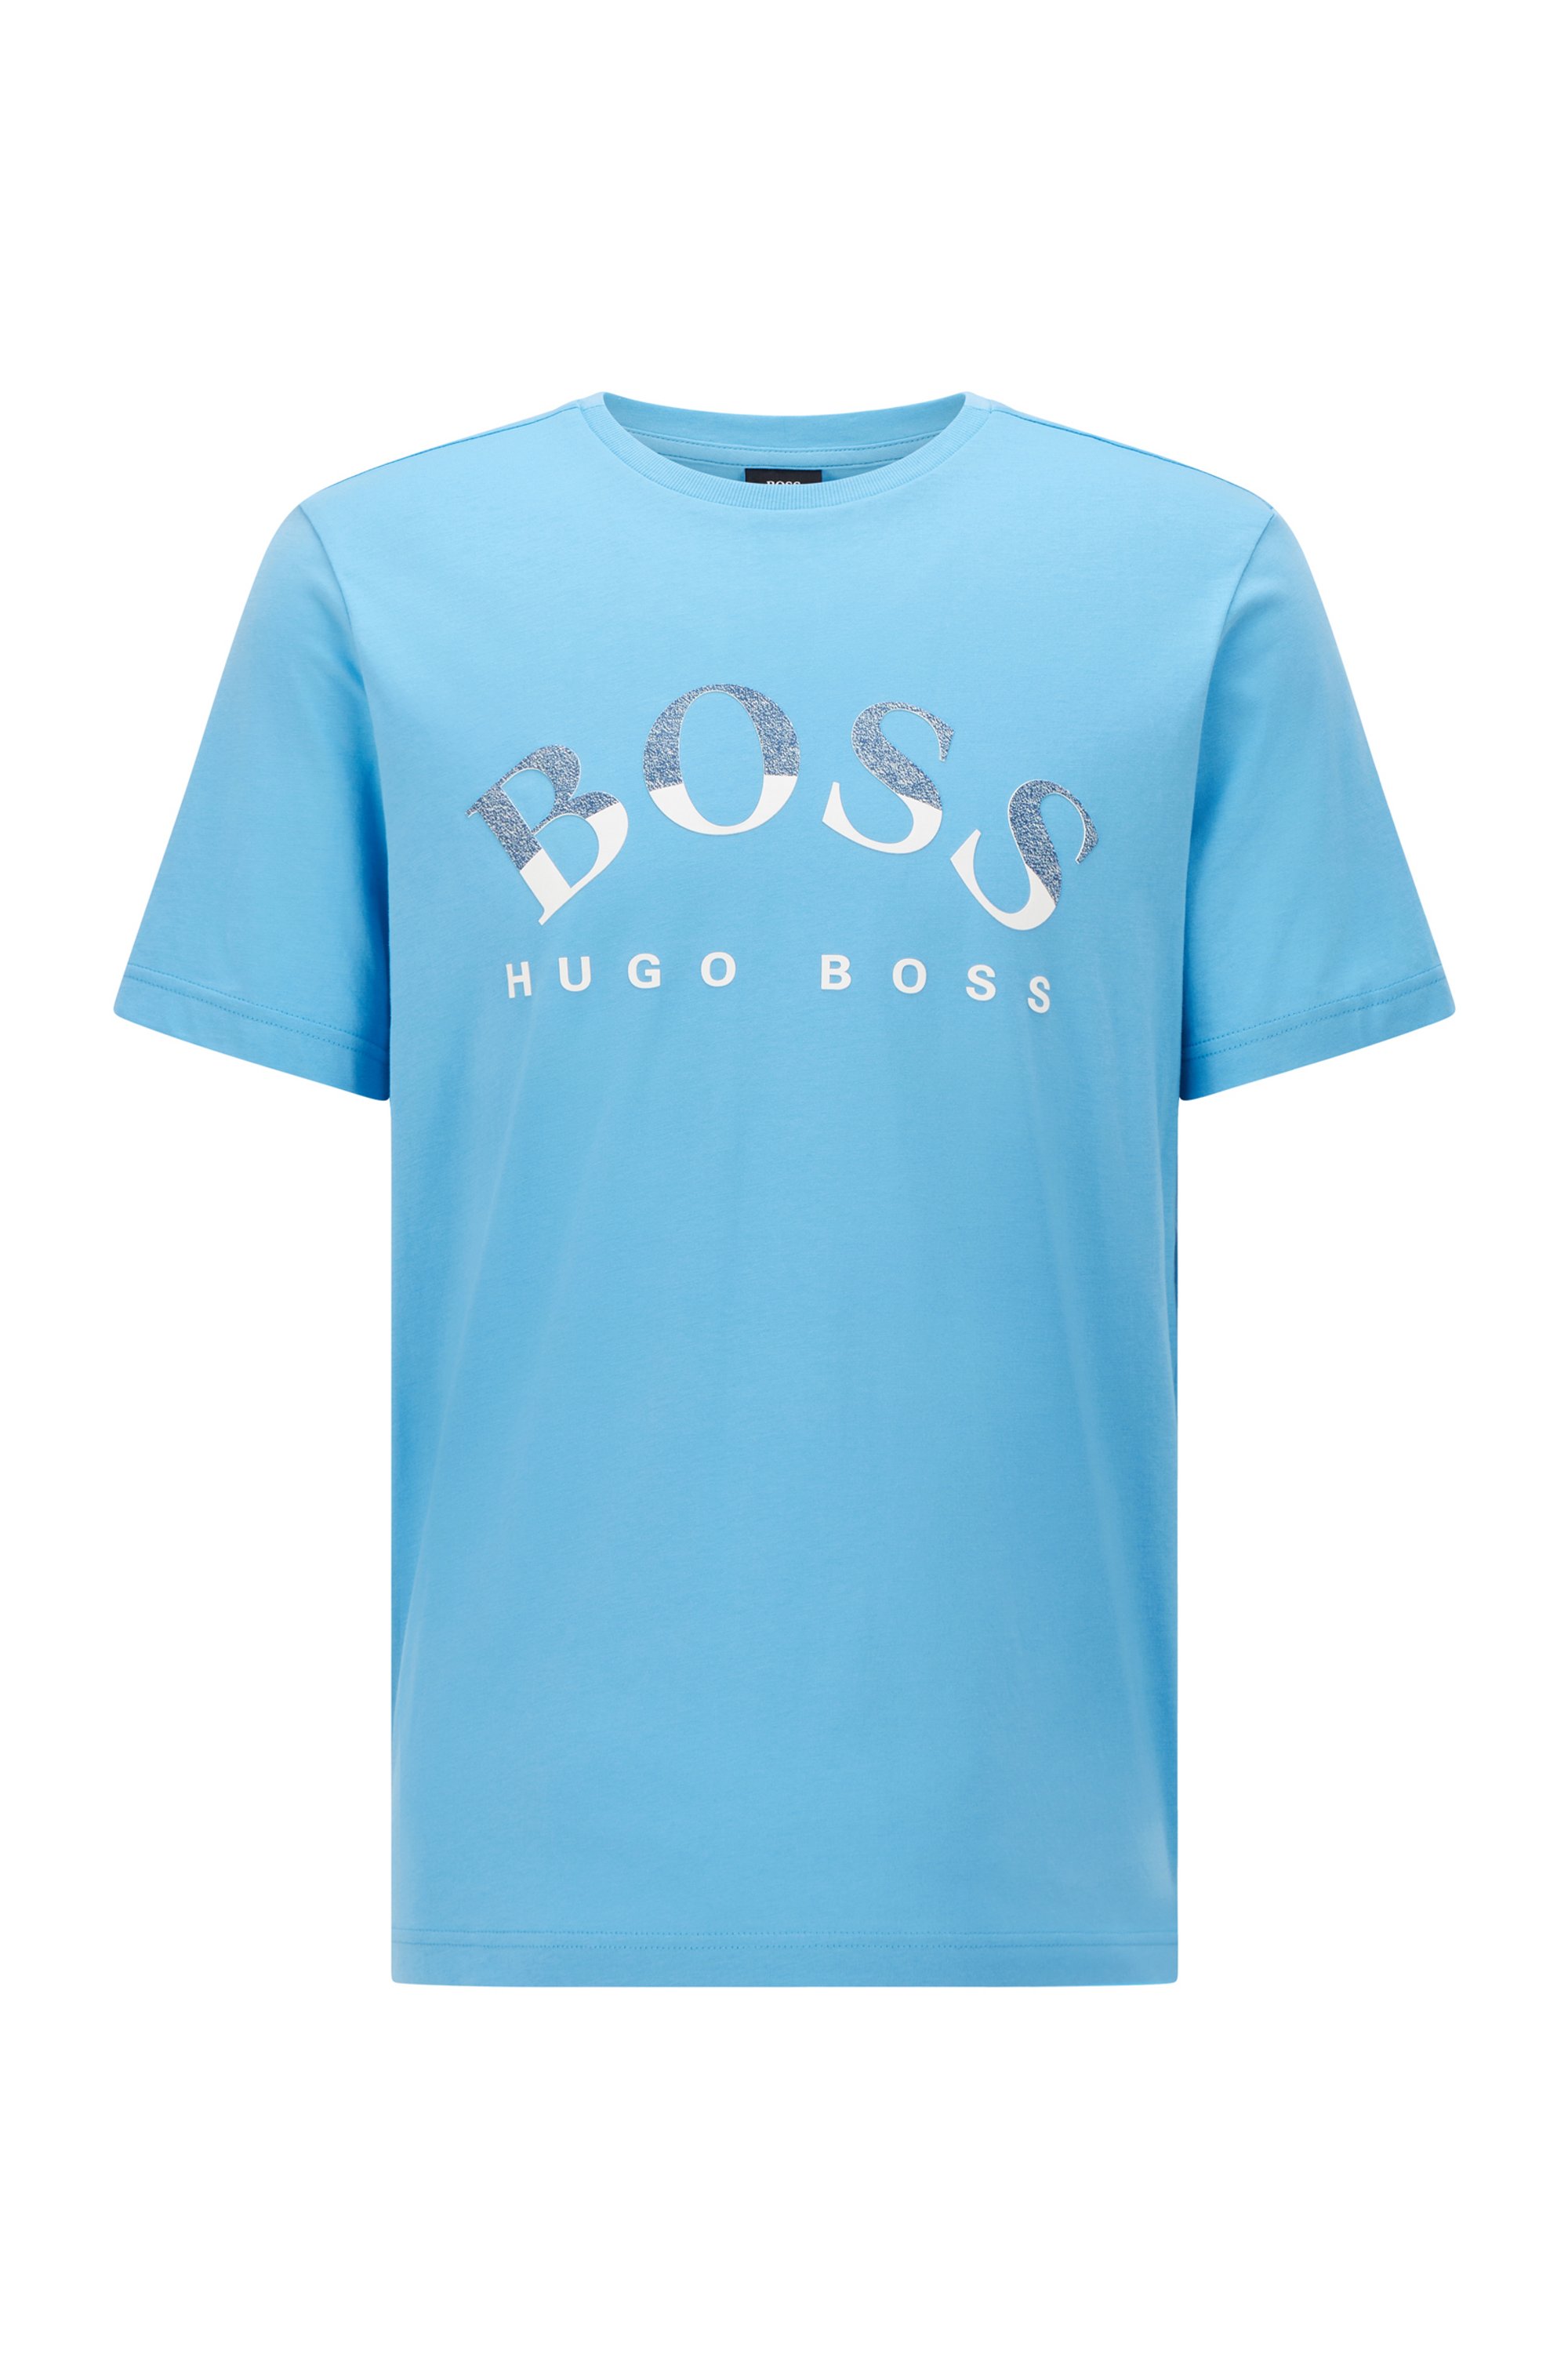 T-shirt en coton biologique avec logo incurvé imprimé, bleu clair